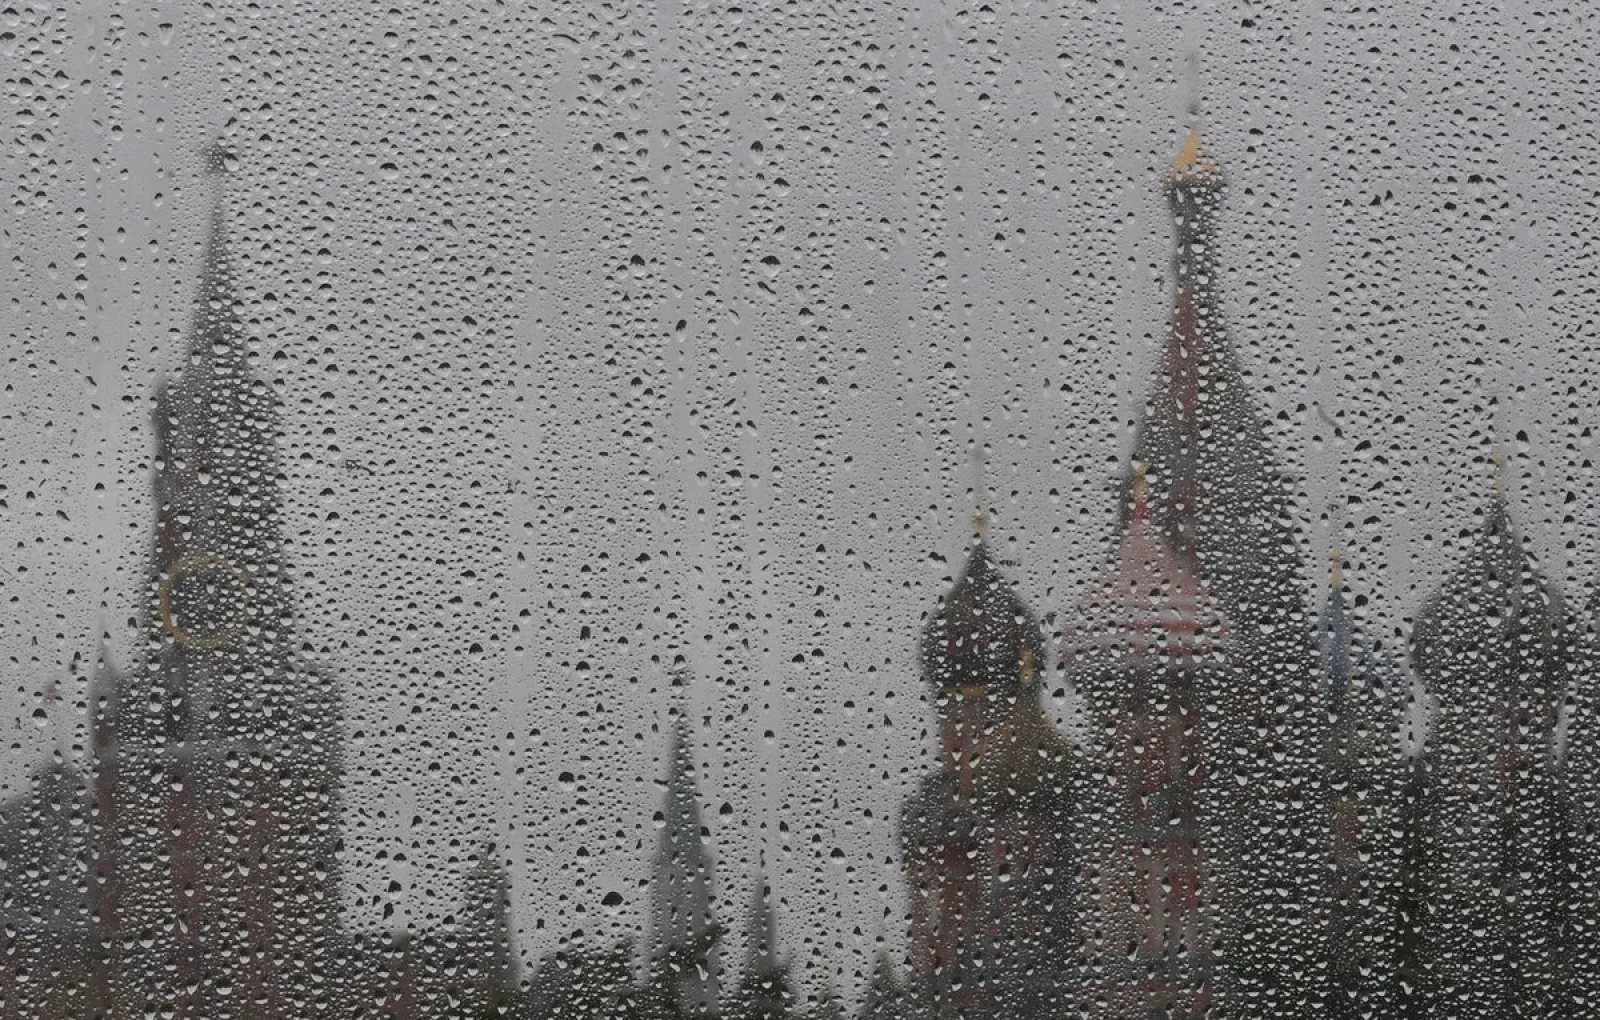 Метеоролог Позднякова: в пятницу в Москве ожидаются ливни и усиление ветра